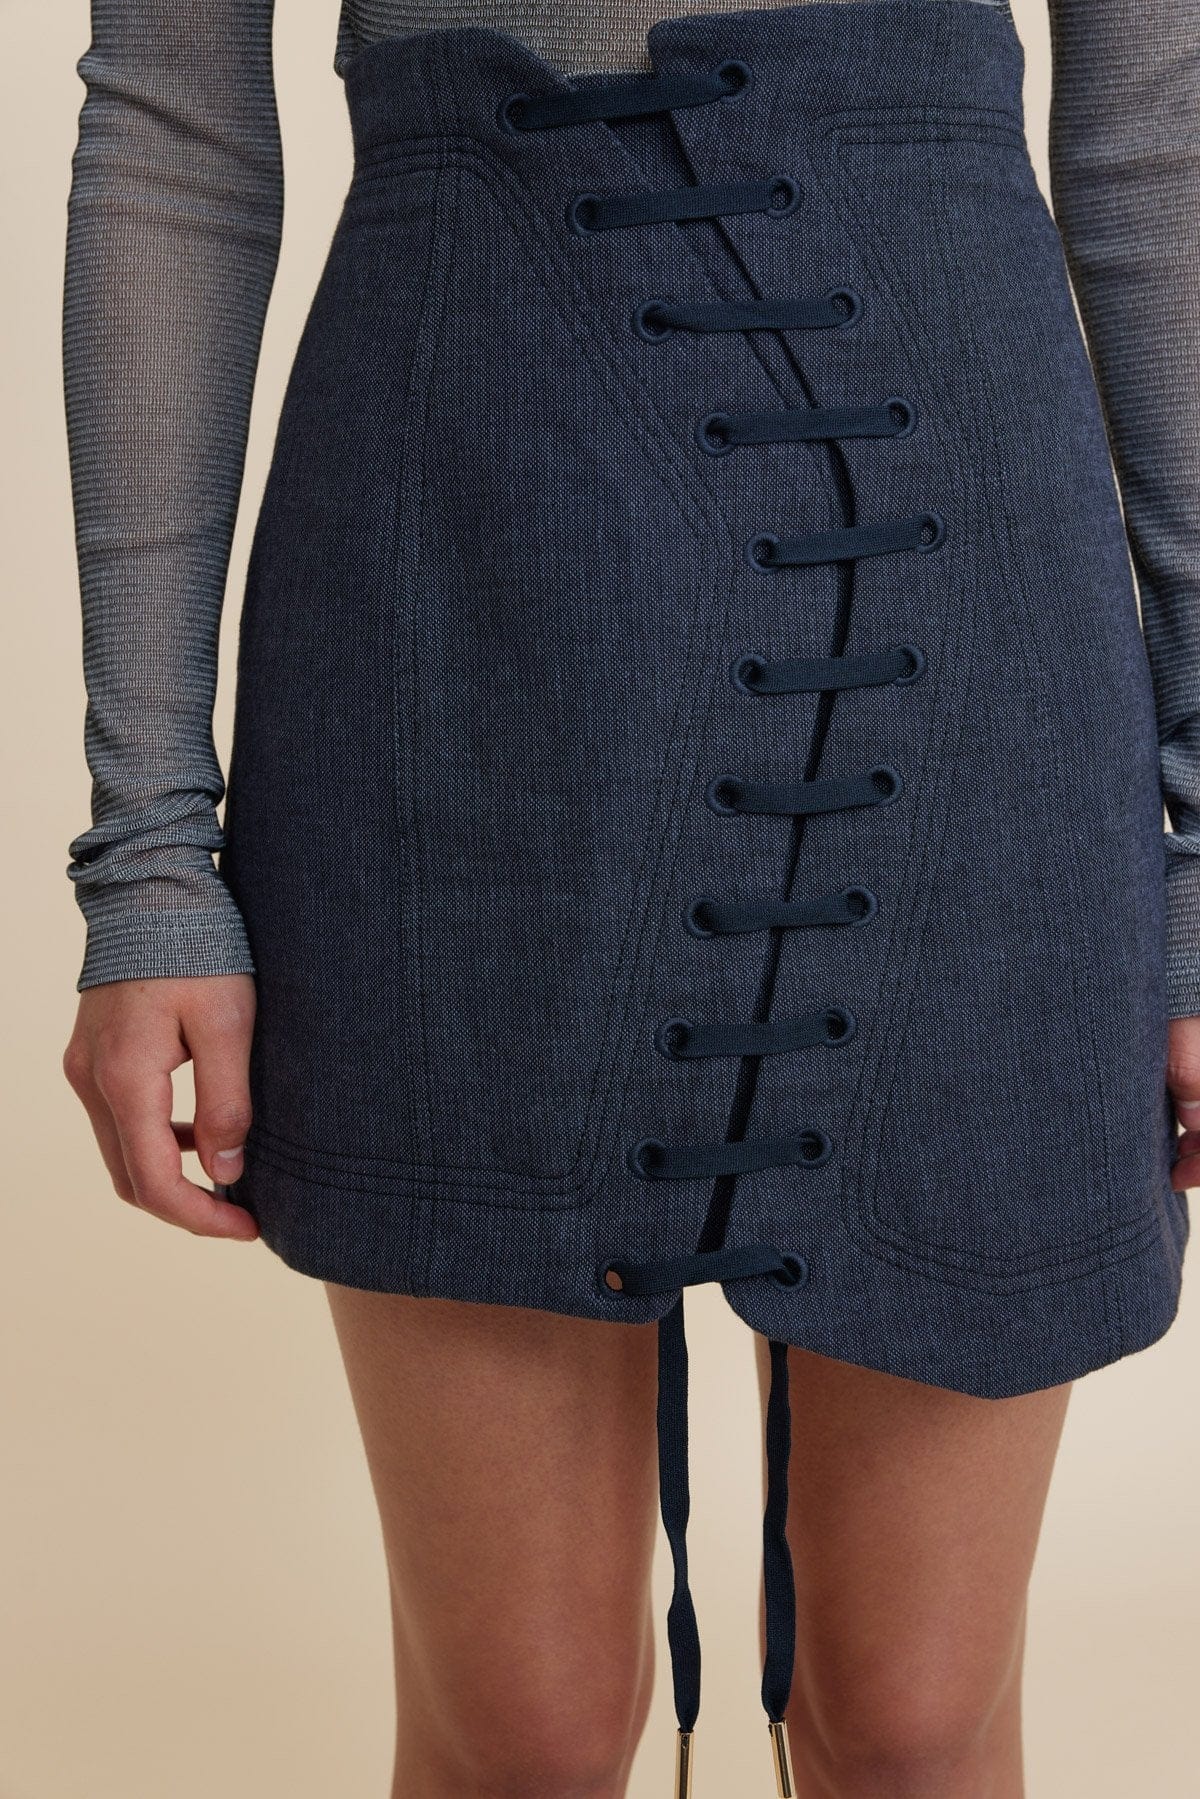 Acler Skirts - Formal Acler | Elmore Mini Skirt - Navy